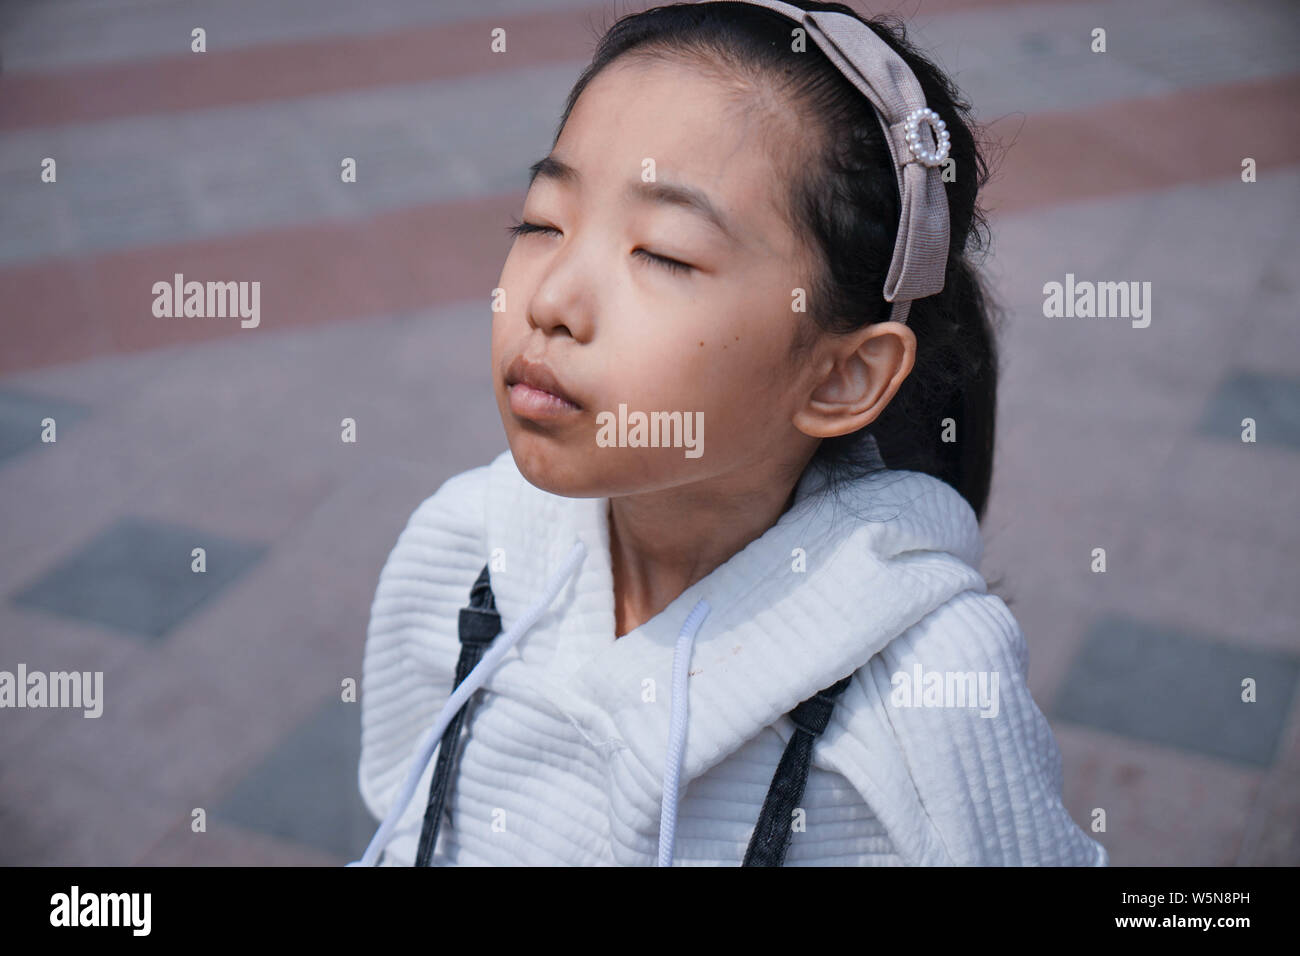 13-year-old fille chinois Zhang Bohan diagnostiqué avec la maladie de Gaucher, montre son ventre sur une route dans la province de l'Anhui en Chine orientale, le 29 mars 2019 Banque D'Images